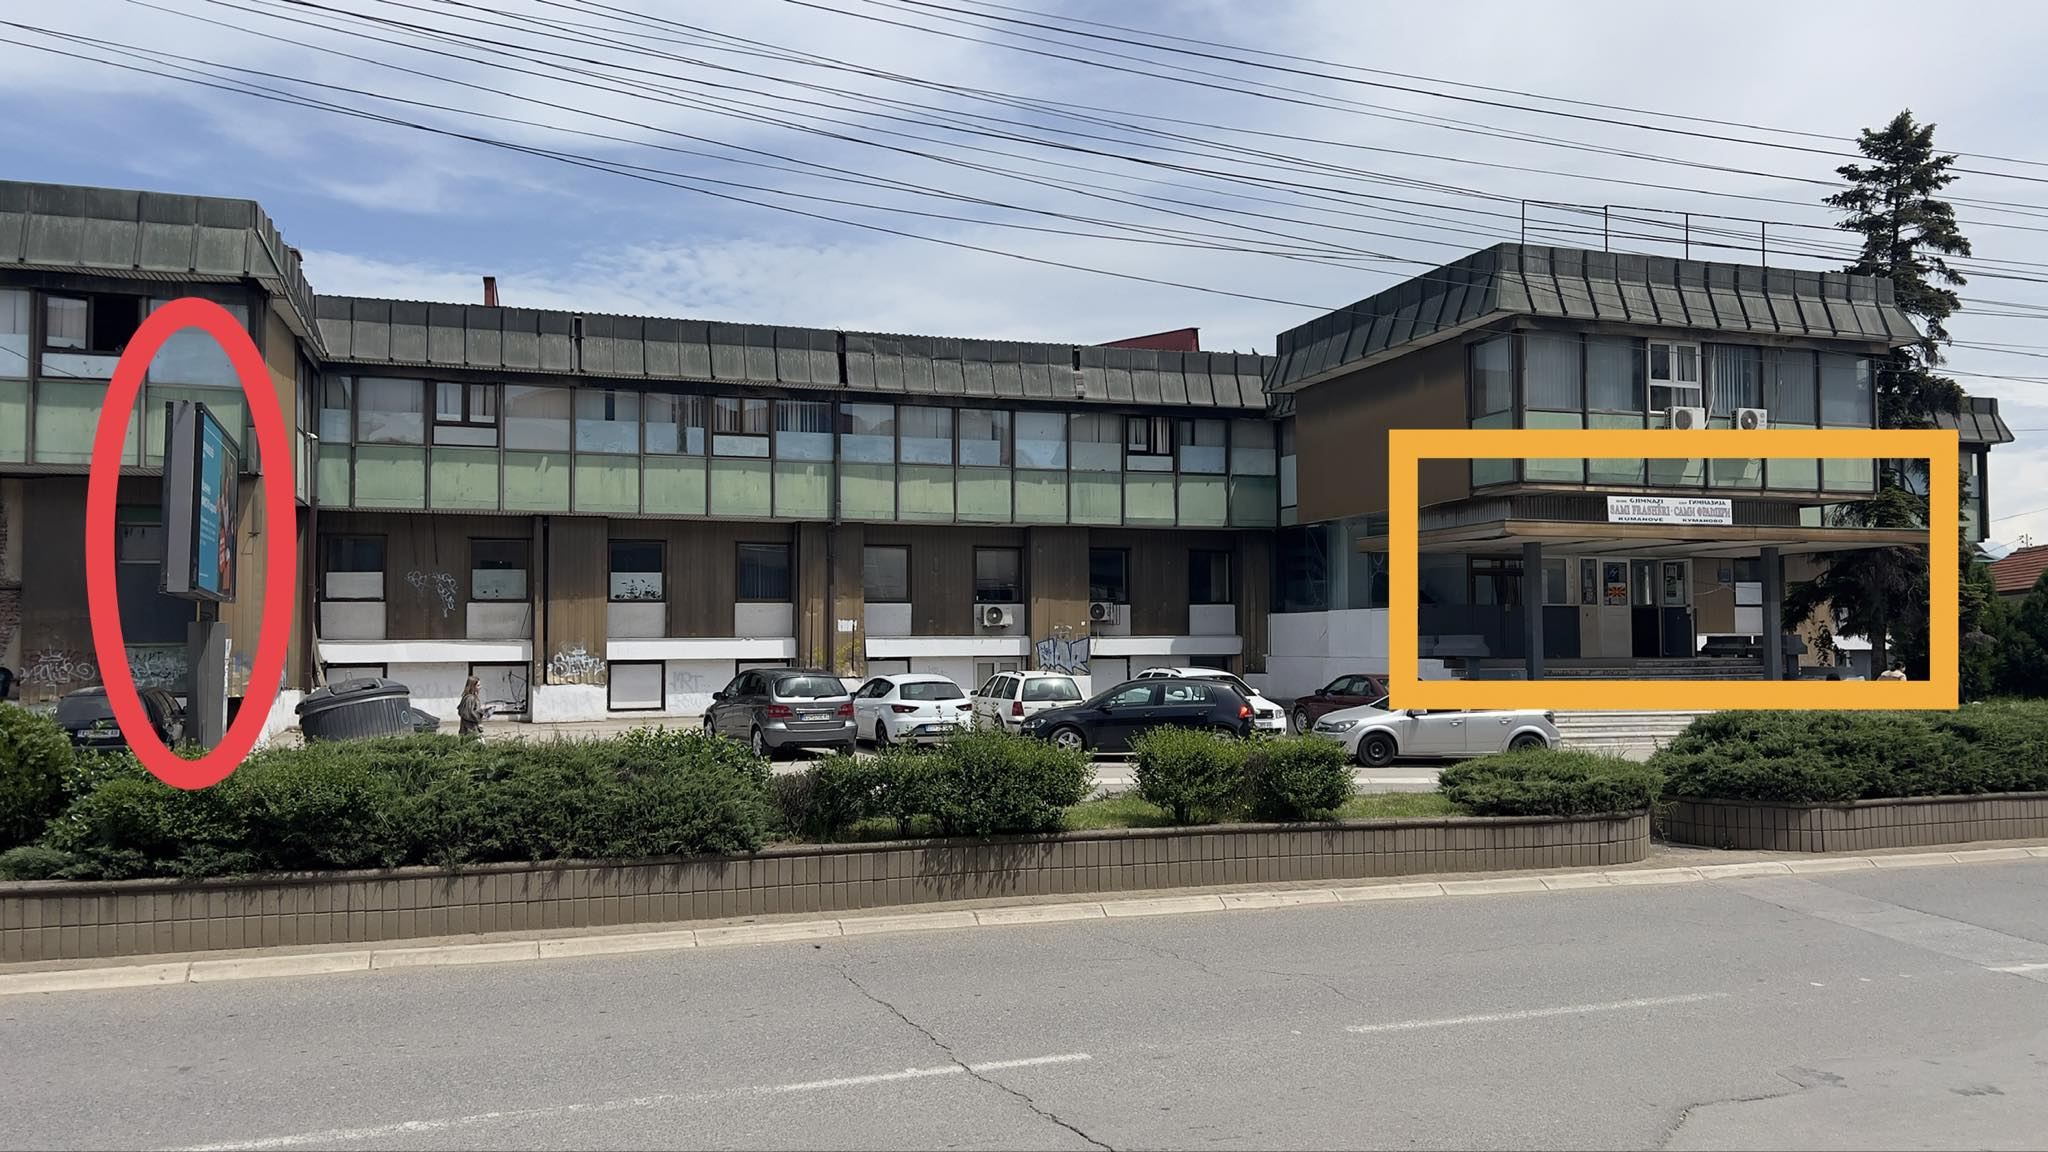 Billbord reklamues nga një parti politike qëndron në oborrin e Gjimnazit të Kumanovës